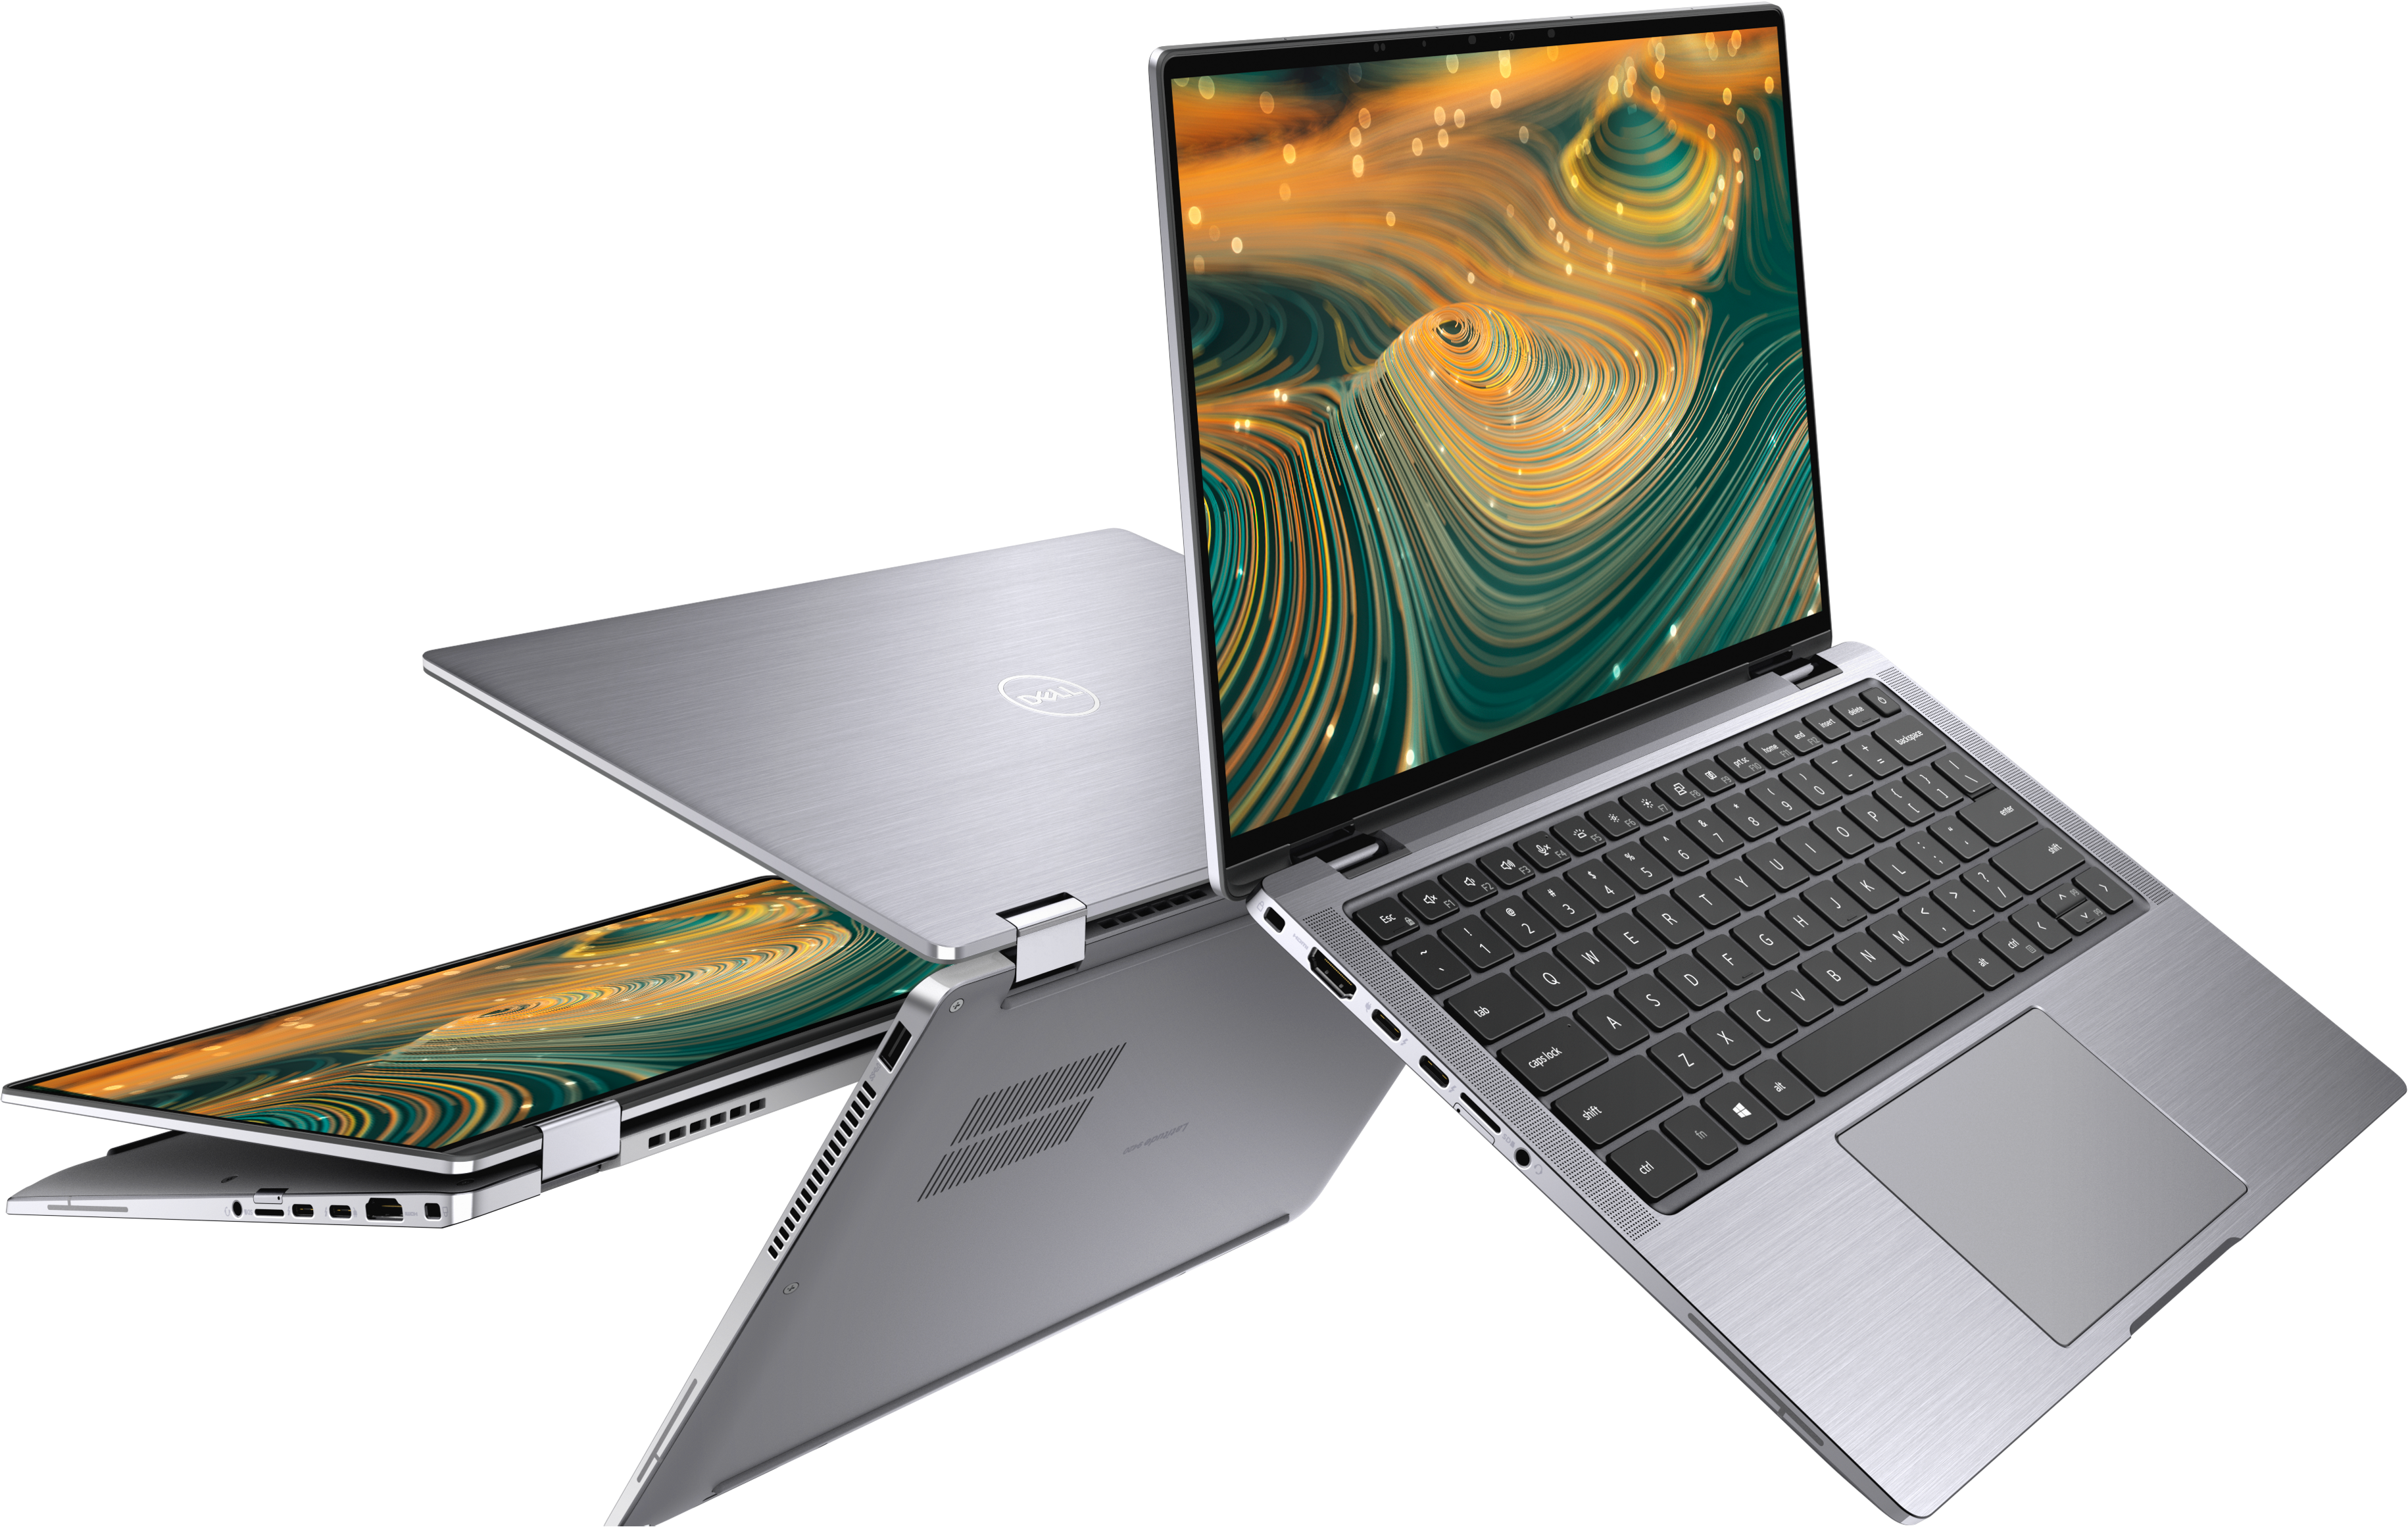 Kiểm tra kỹ càng ngoại quan sản phẩm laptop Dell